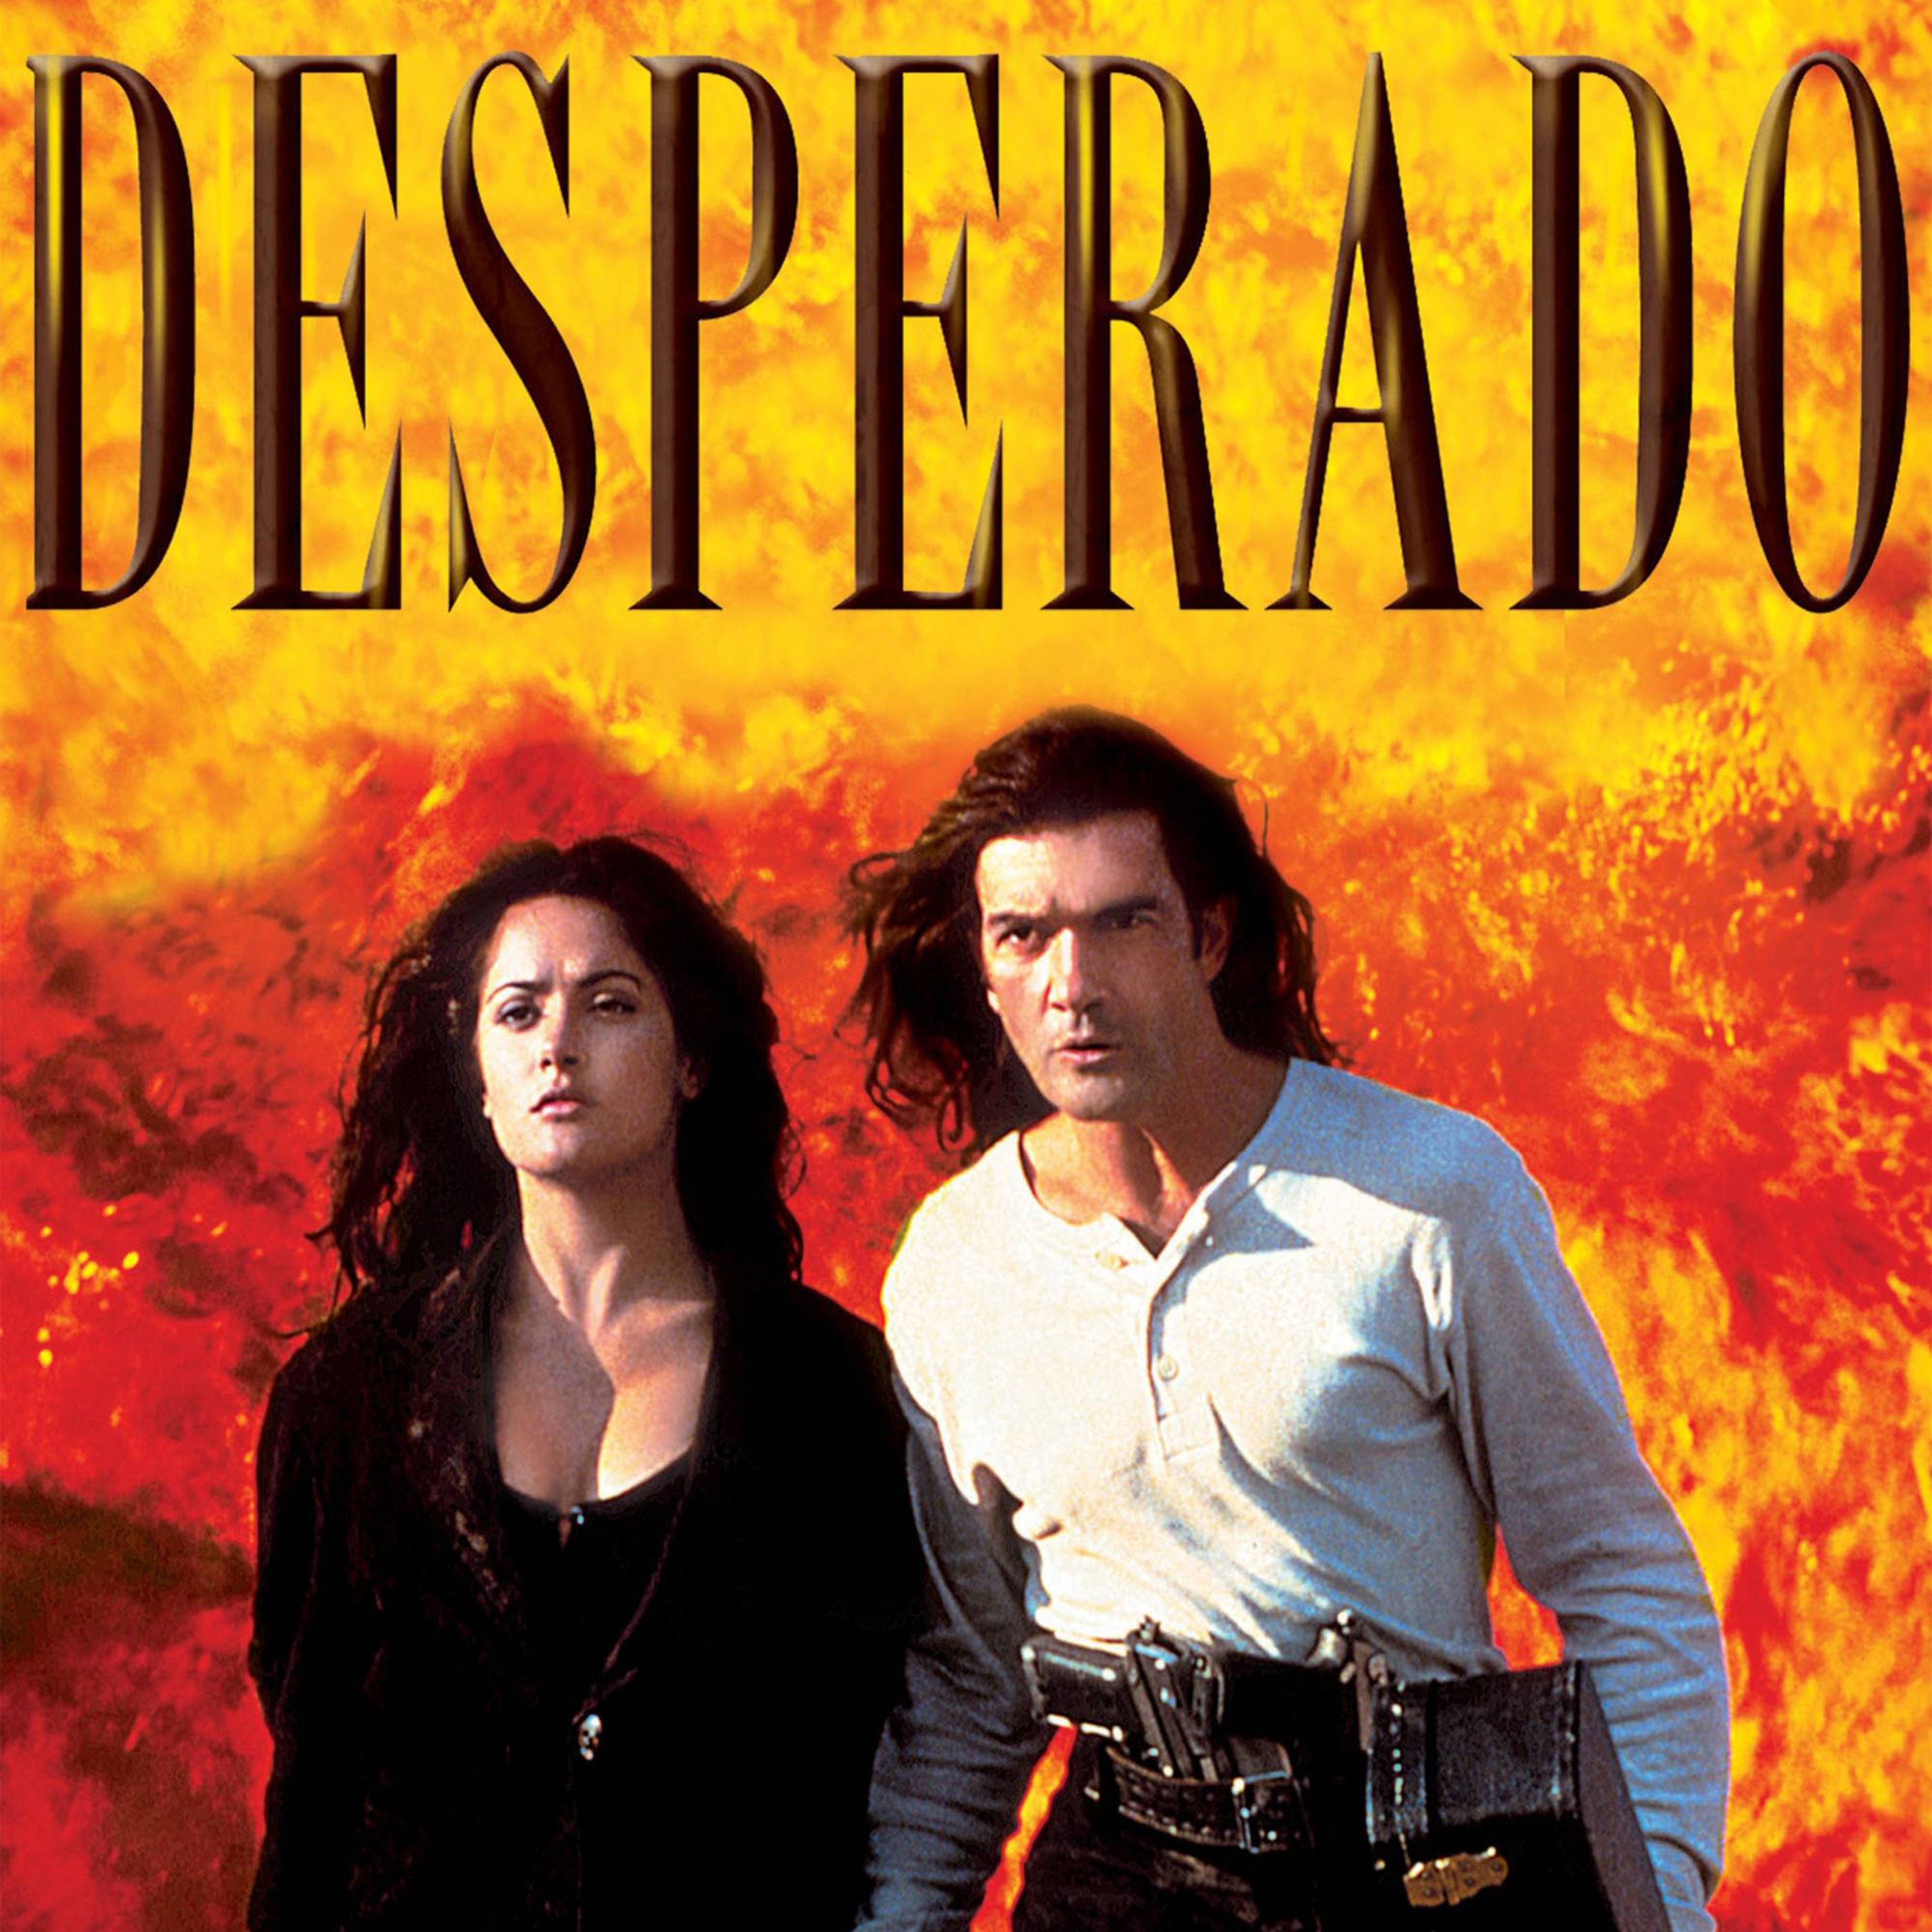 watch desperado full movie